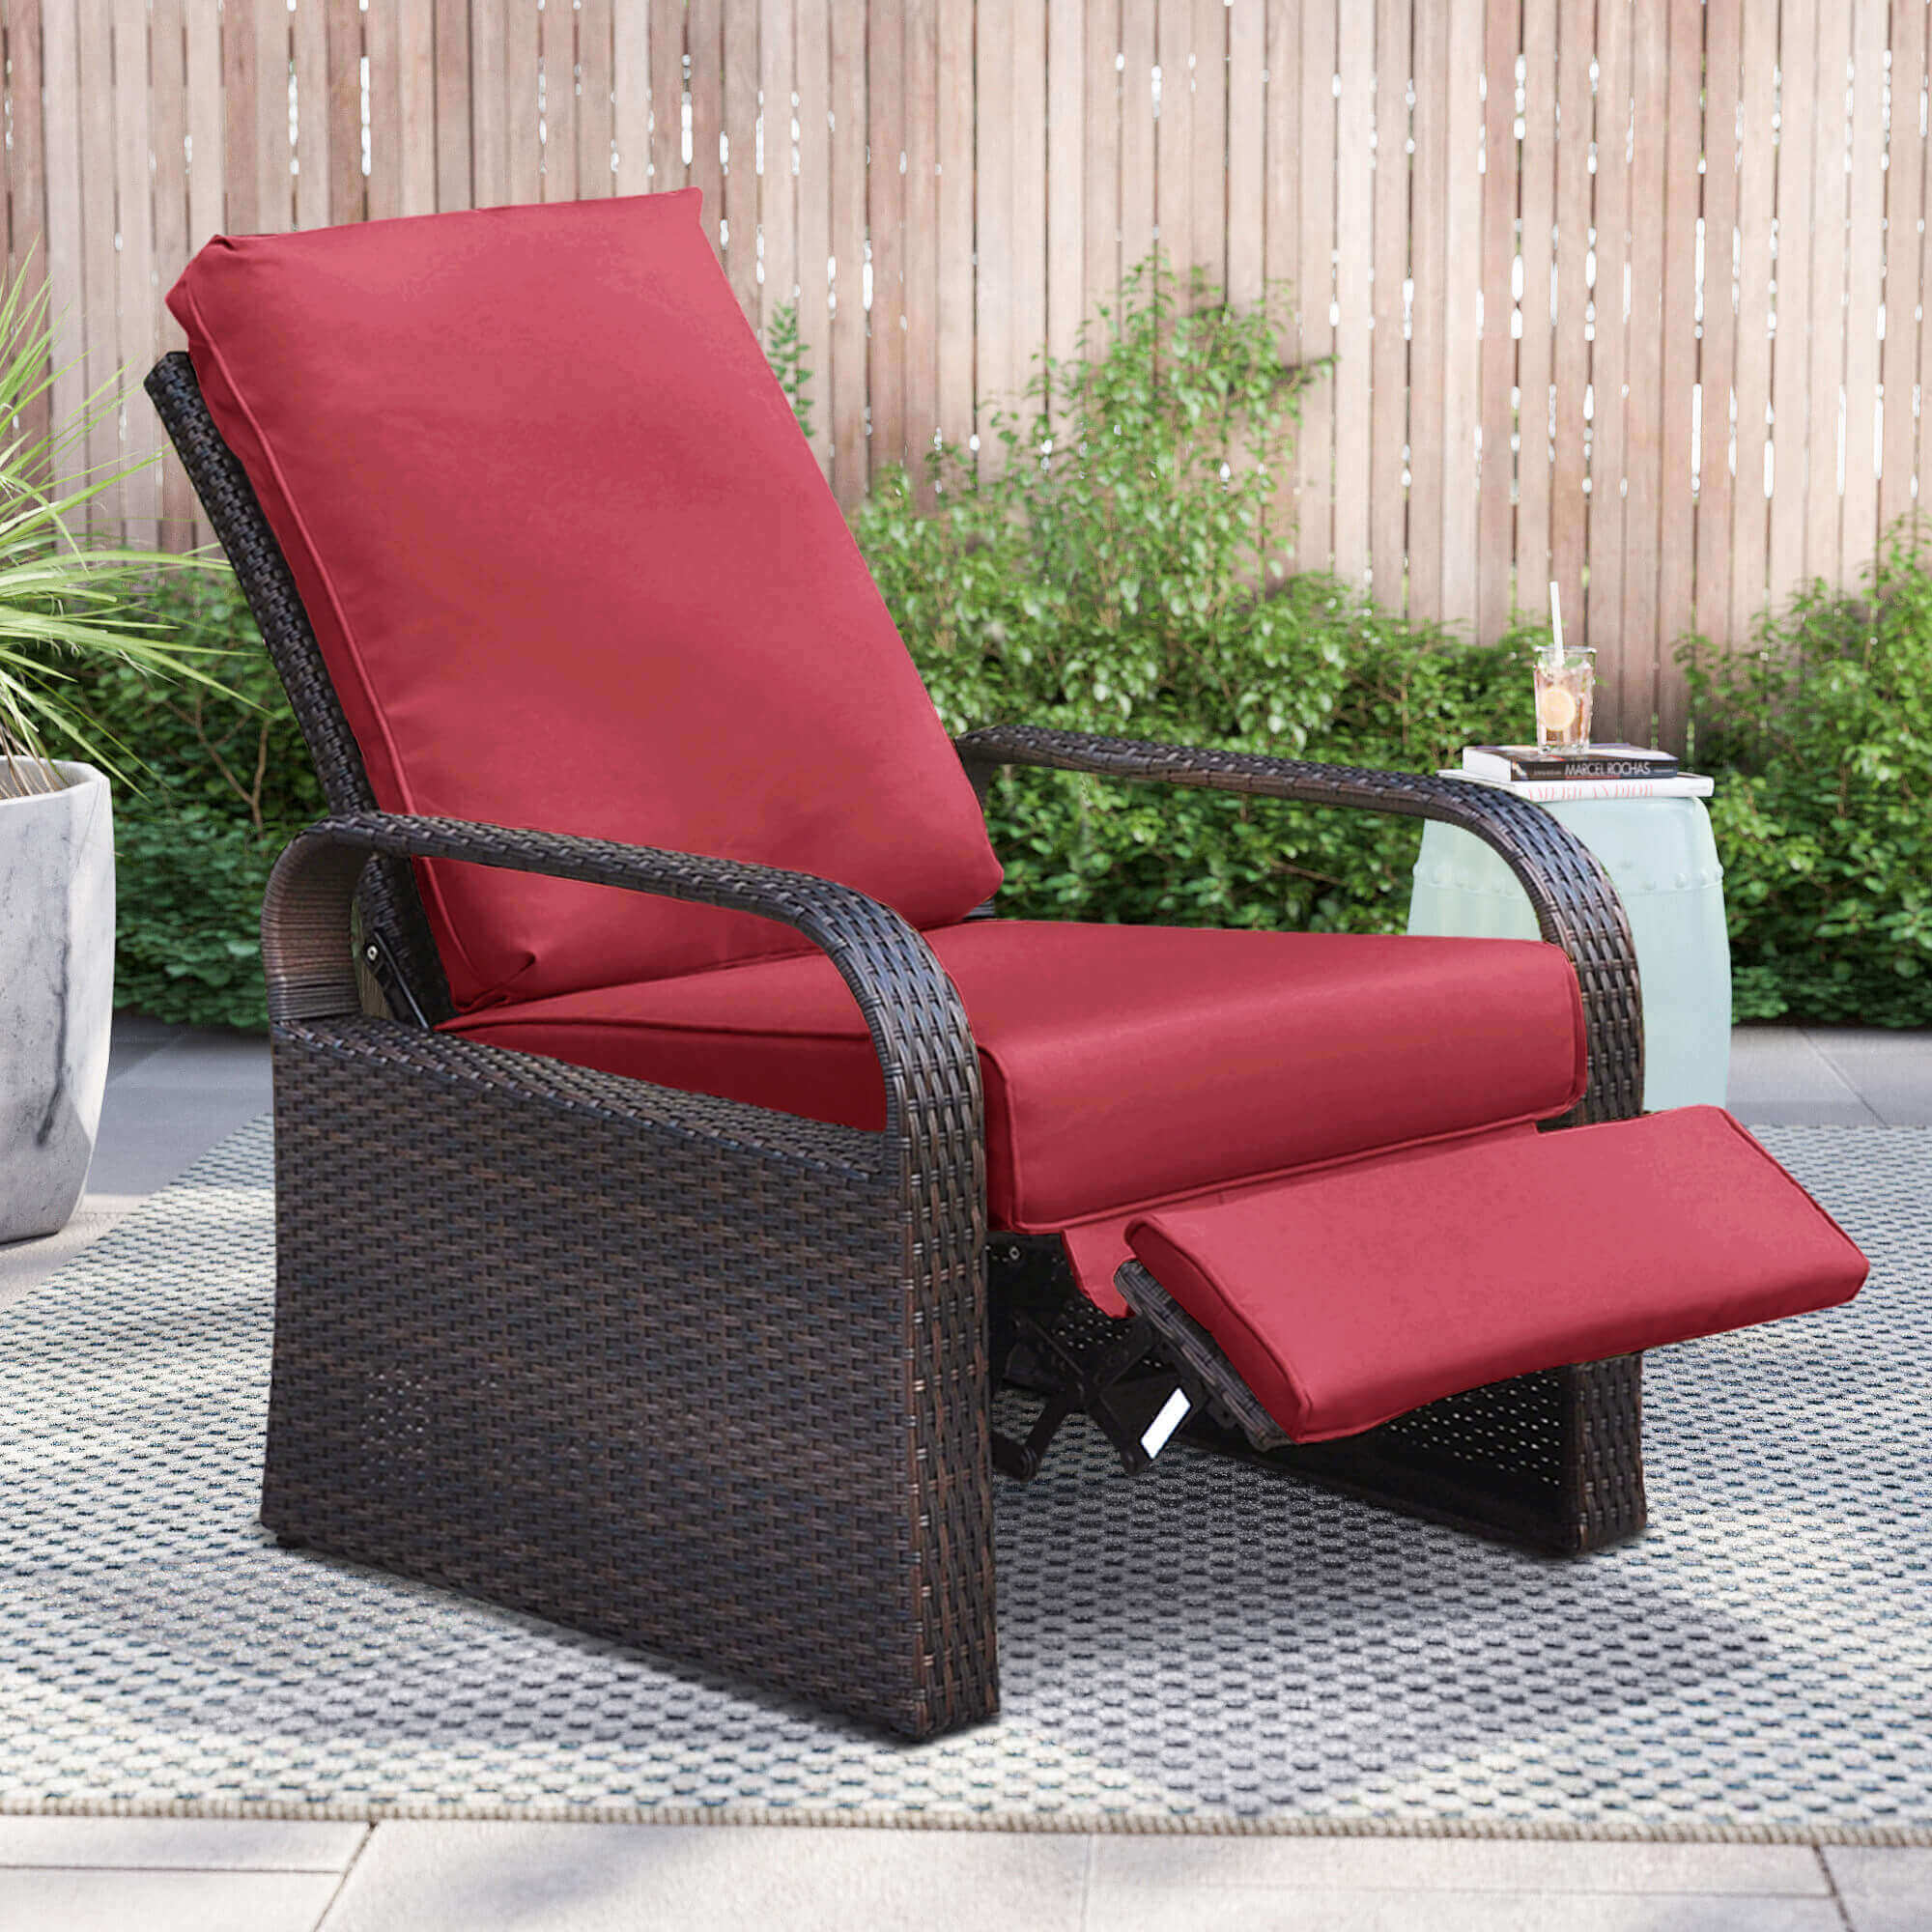 Garden Recliner Chair Cushions